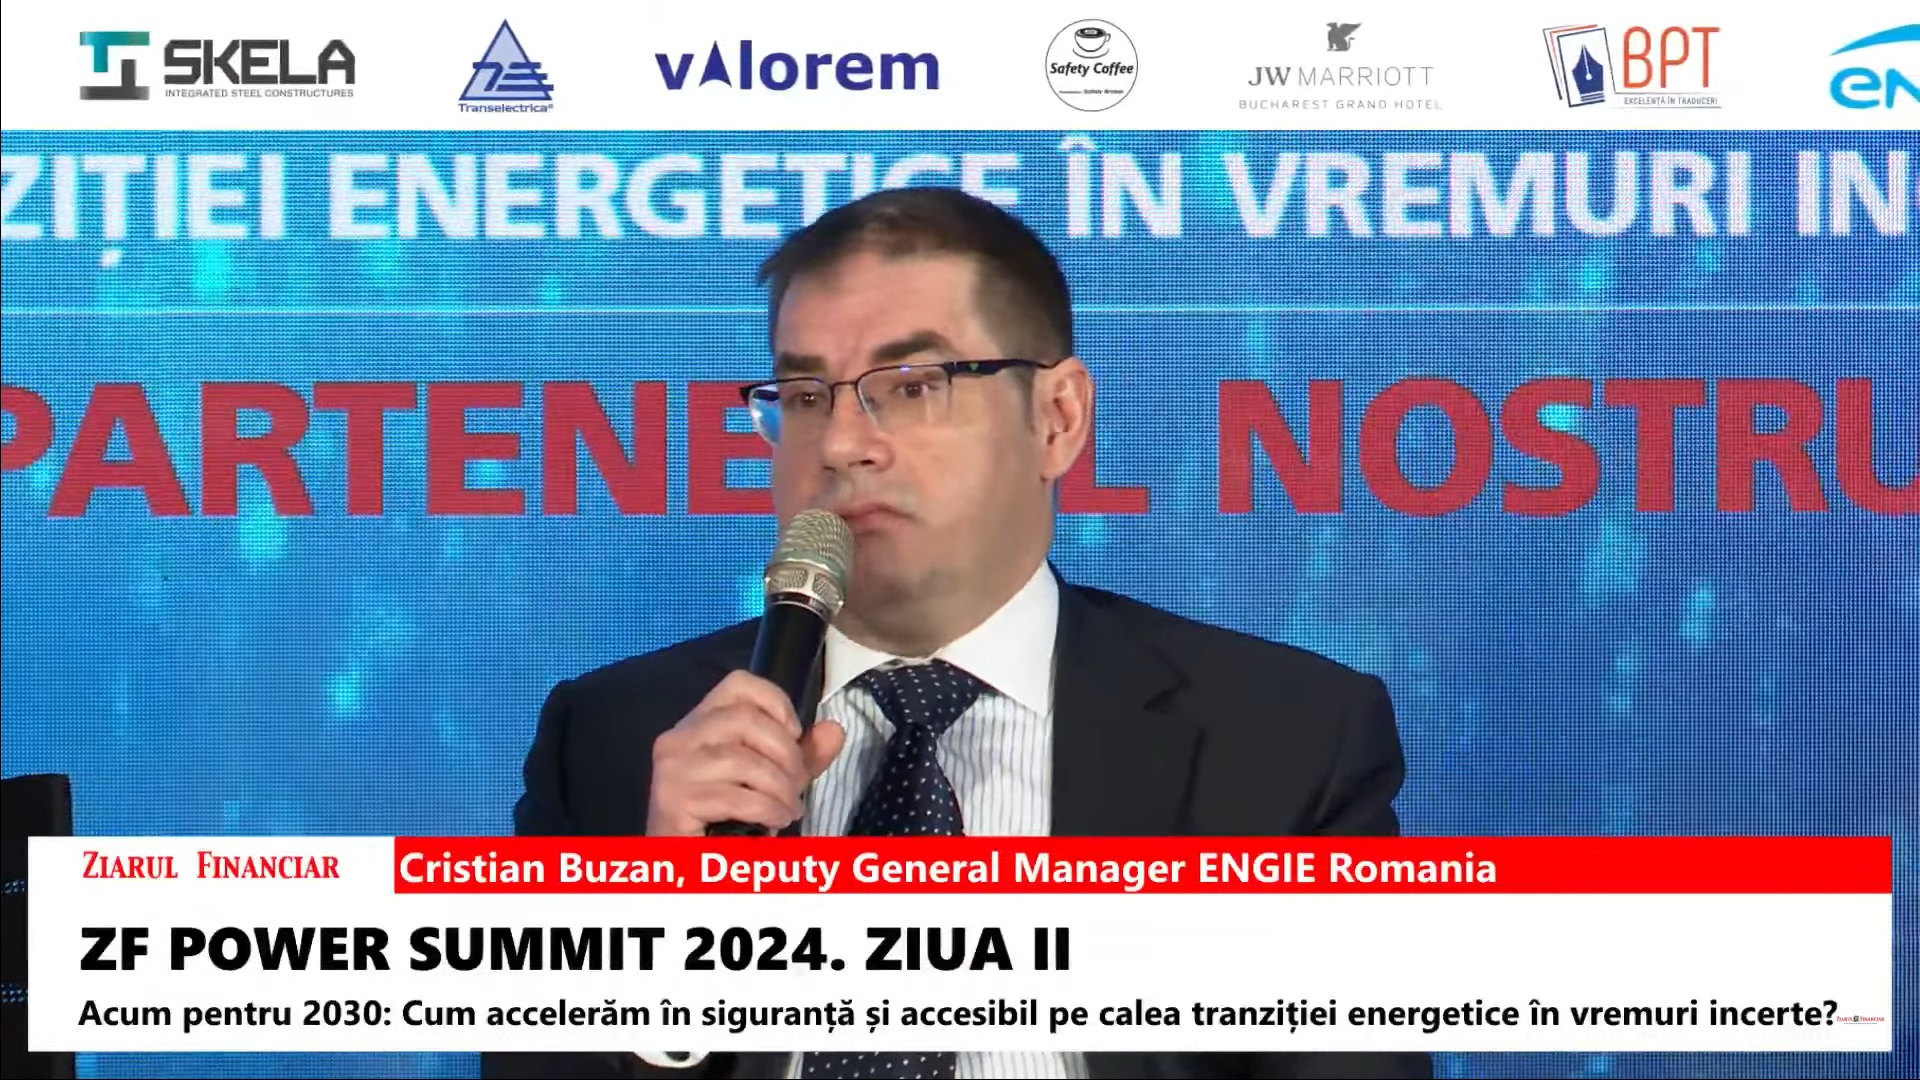 Cristian Buzan, ENGIE Romania: Nu ne permitem să aşteptăm ca hidrogenul şi biometanul să fie tehnologii dovedite. Astăzi sunt bani europeni pentru acestea, mâine s-ar putea să fie prea târziu